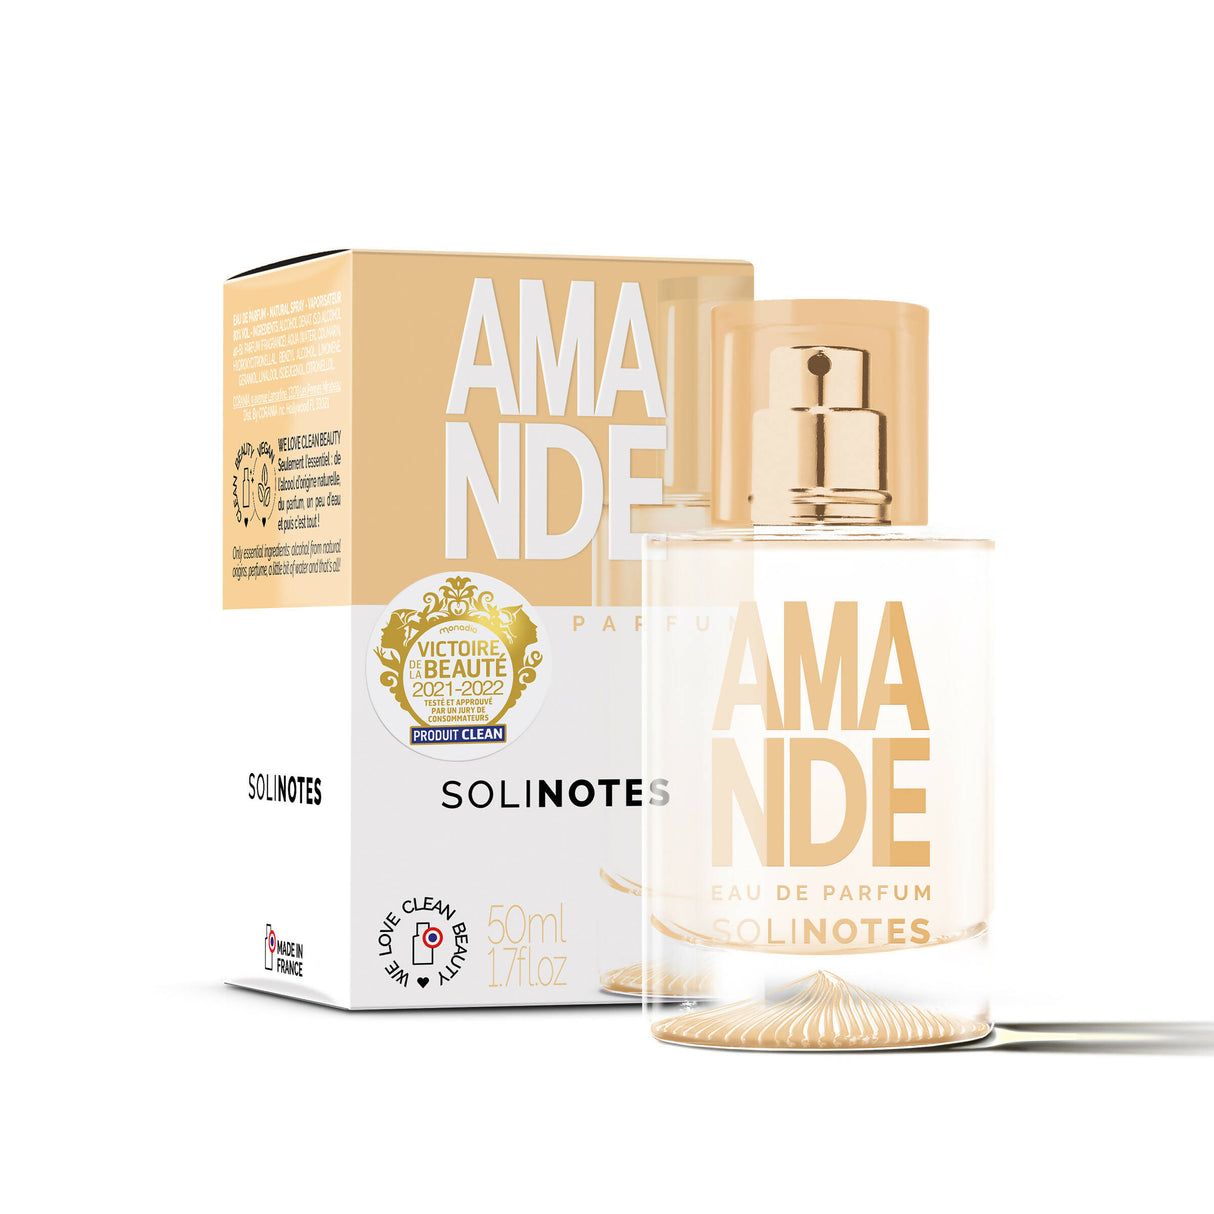 Solinotes - Almond Eau de Parfum 1.7 oz - CLEAN BEAUTY